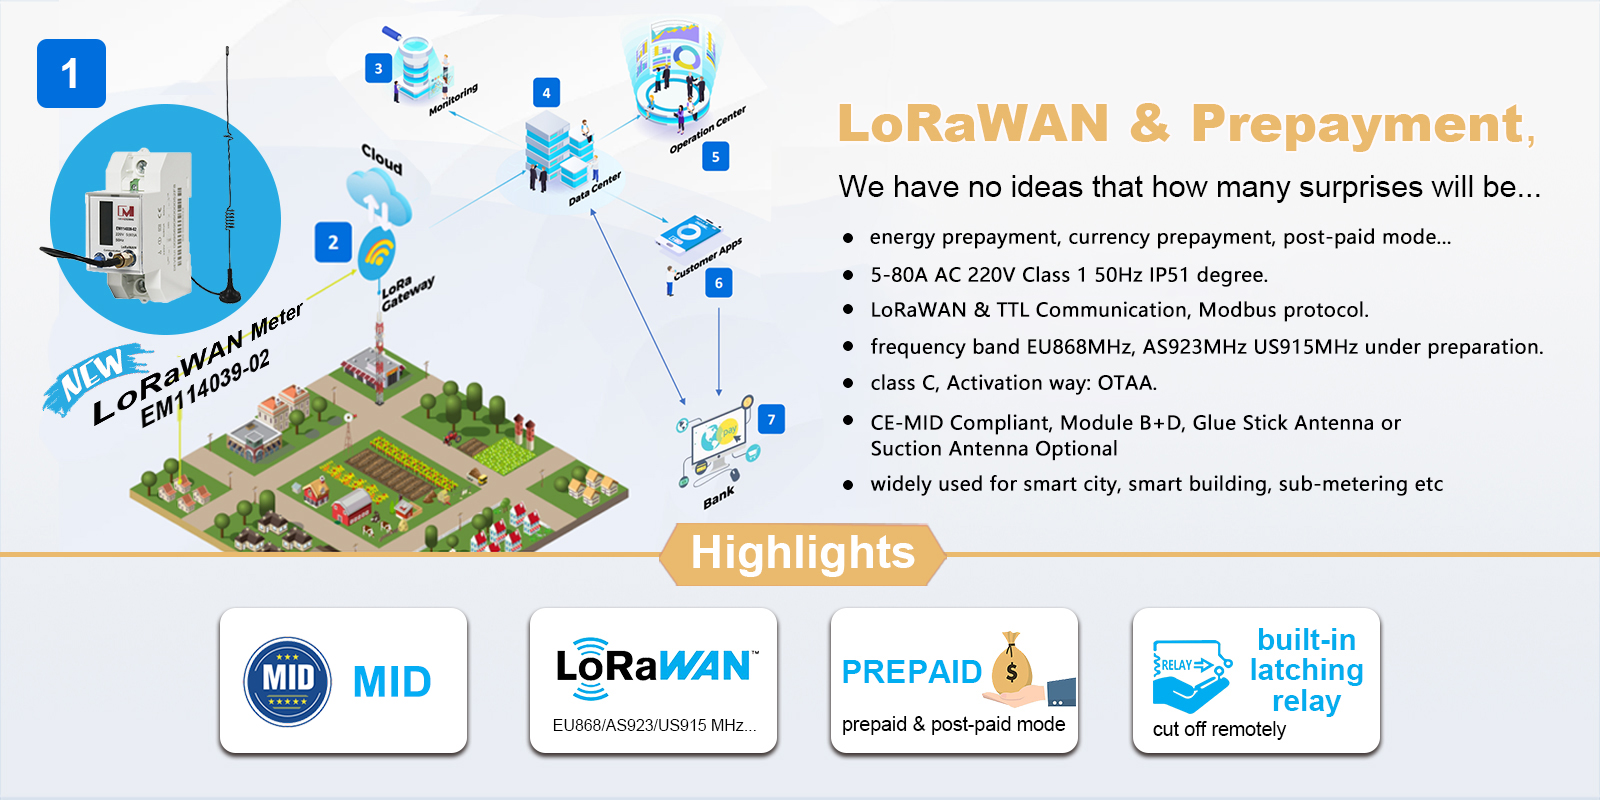 EM114039-02 Single Phase LoRa IoT Prepaid Smart Energy Meters with LoRaWAN